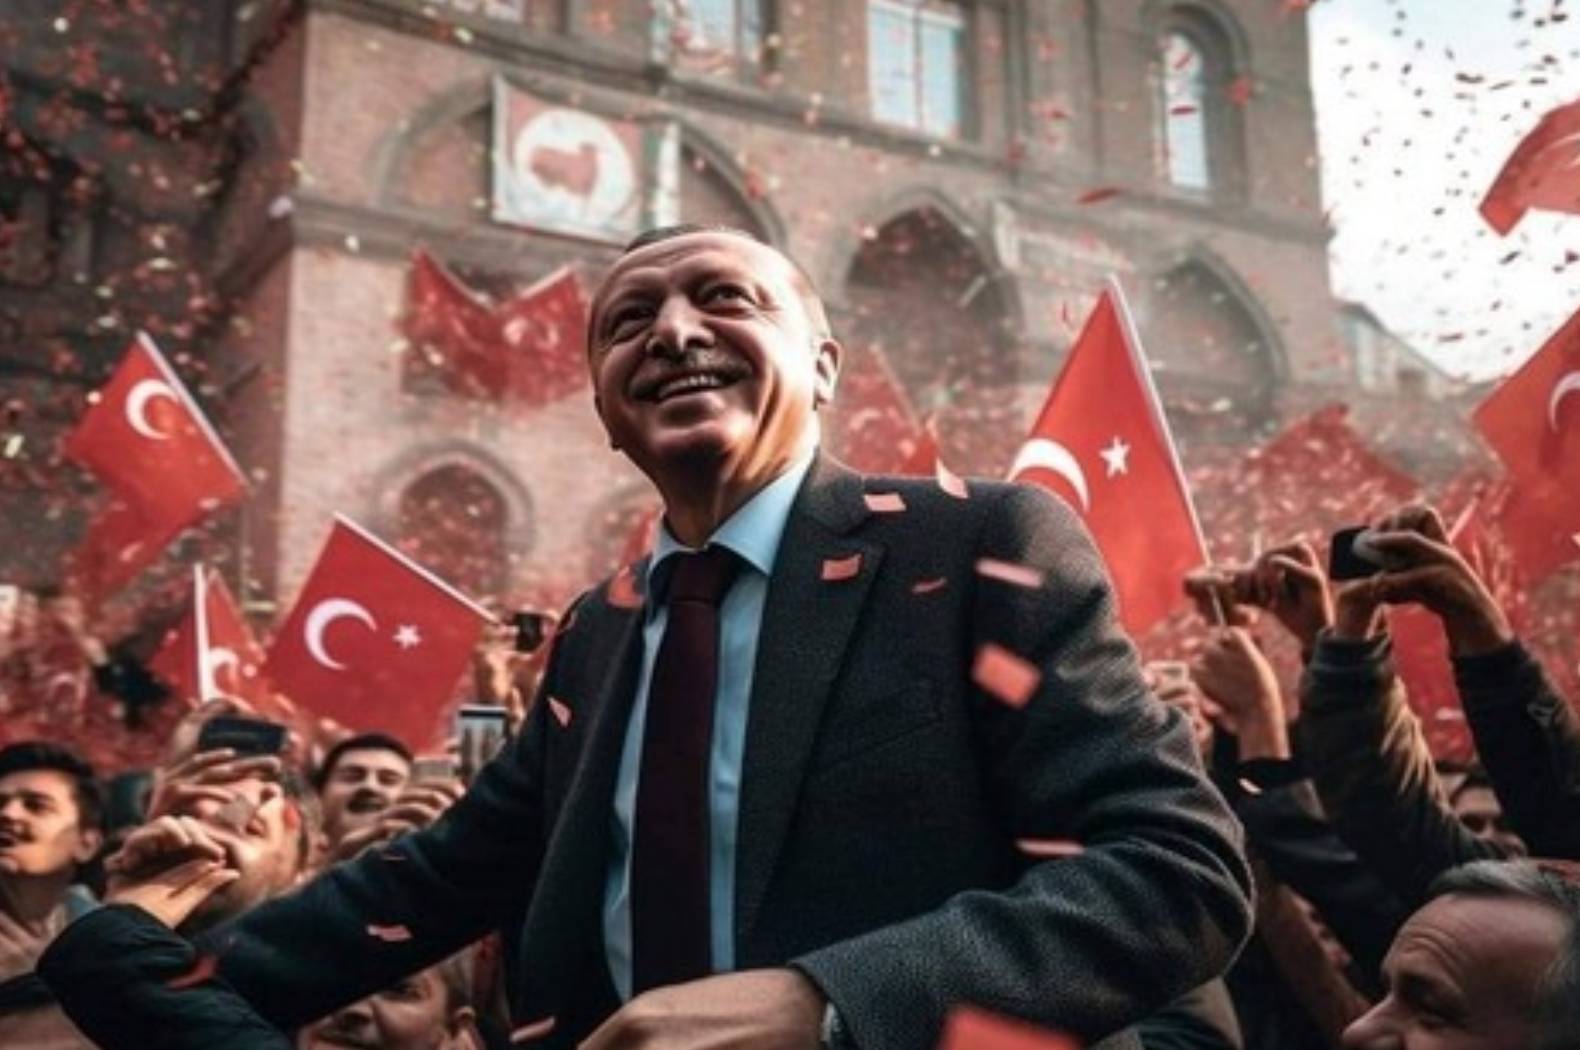 تركيا توجه تهديداً بـ"عواقب وخيمة" للسعودية والإمارات!